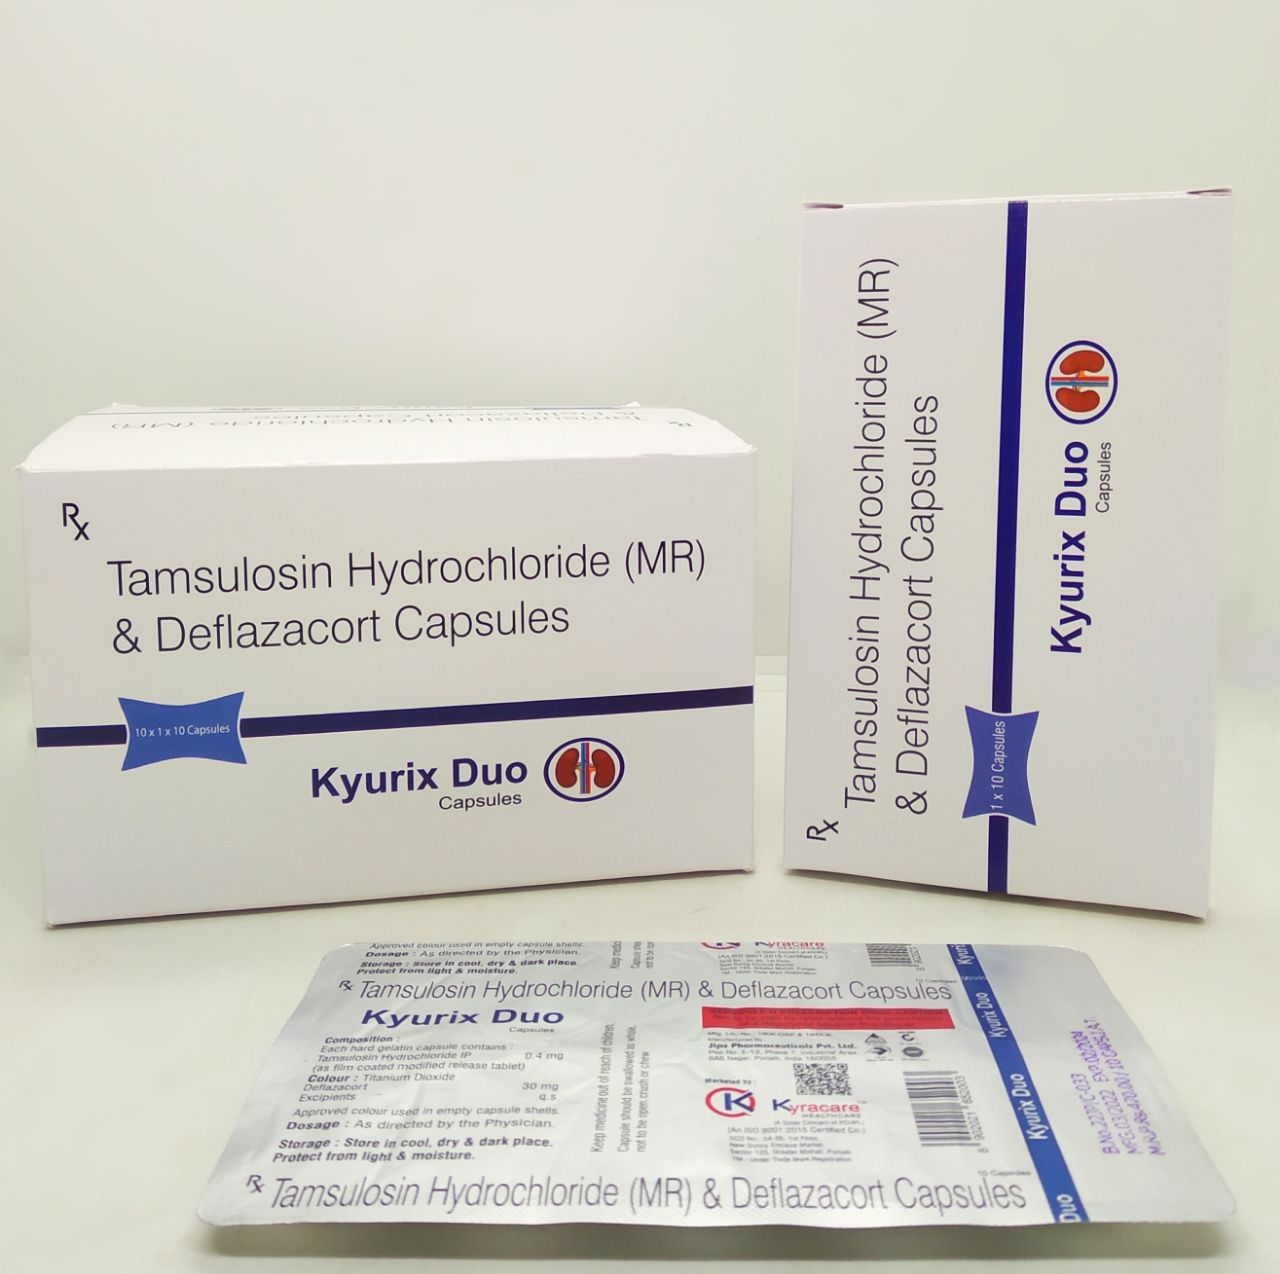  Tamsulosin Hydrochloride(MR) & Deflazocort Capsules